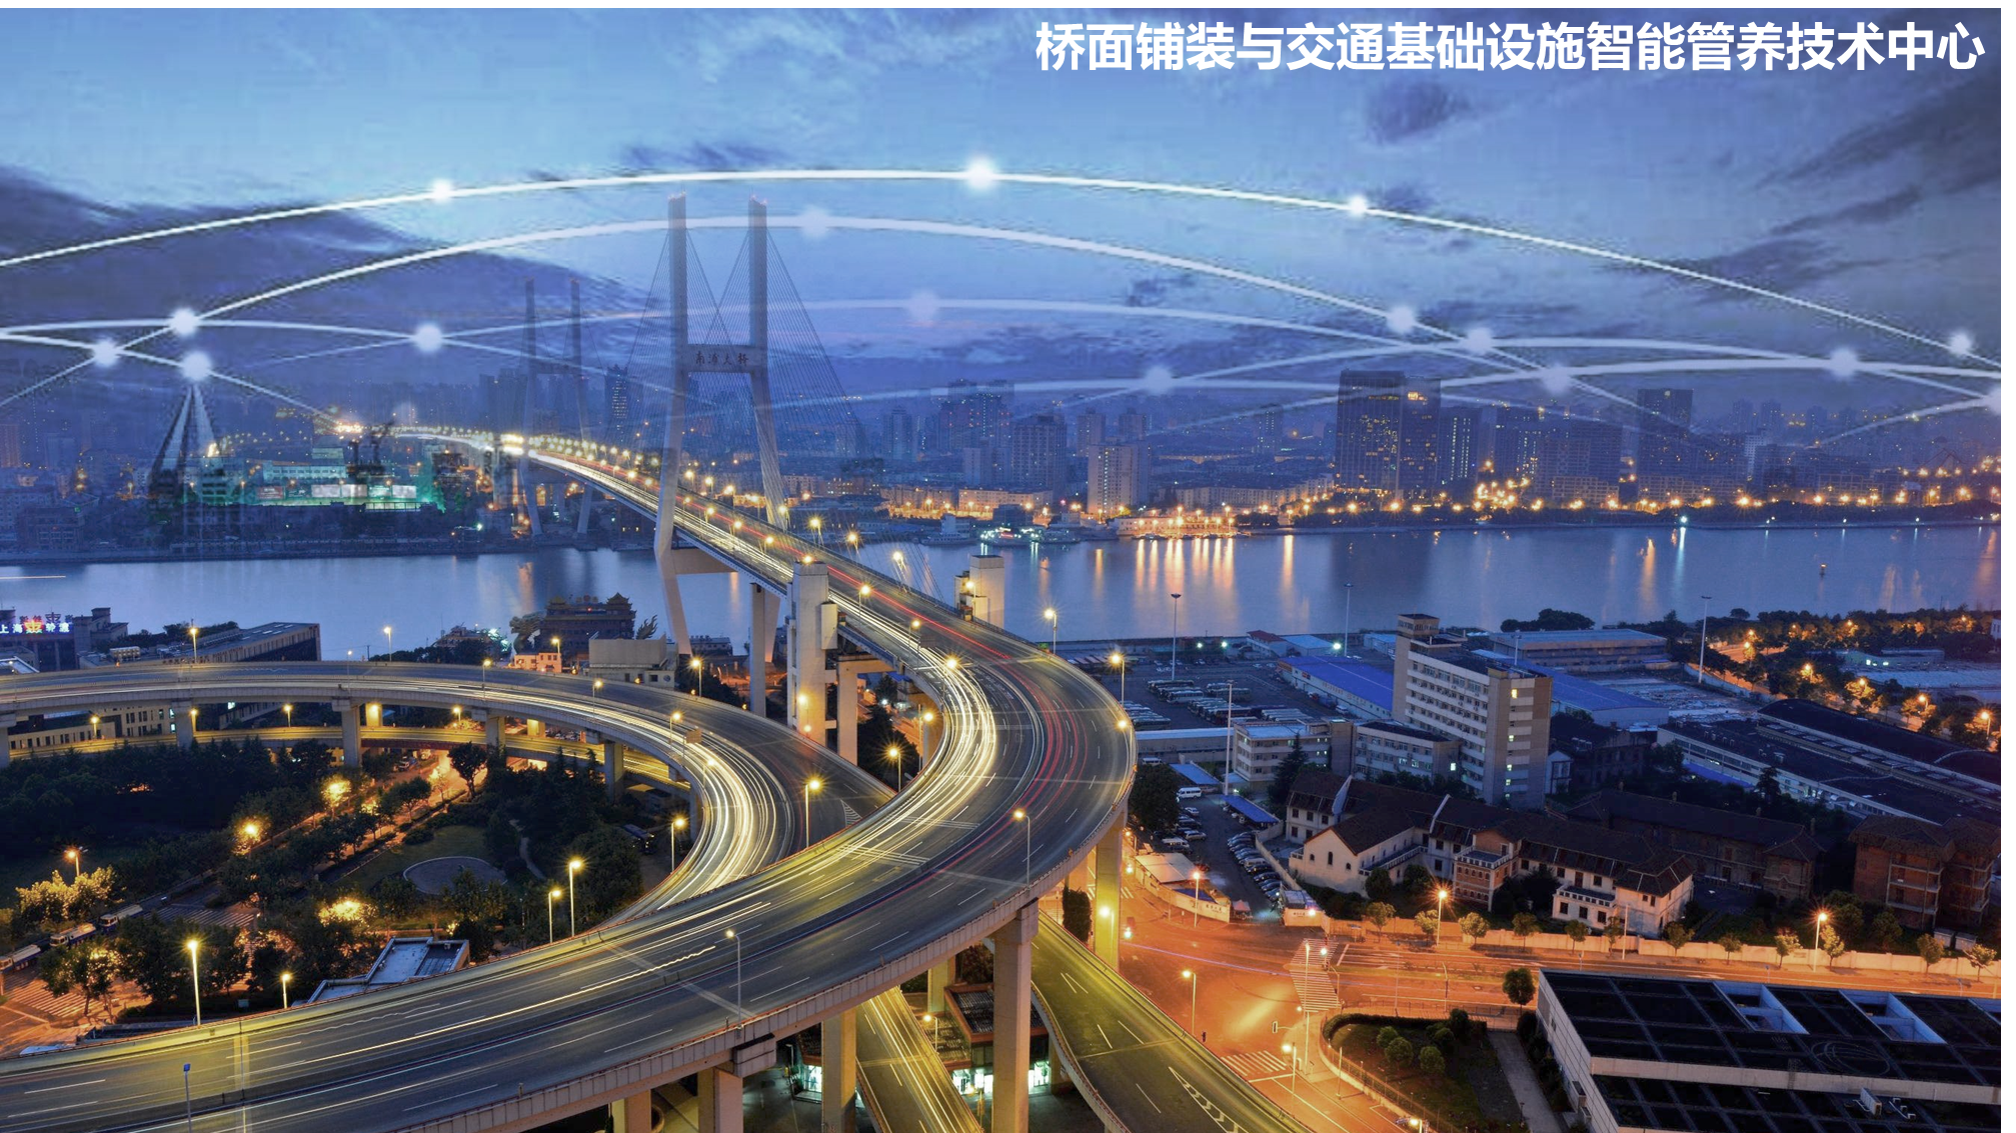 桥面铺装与交通基础设施智能管养...